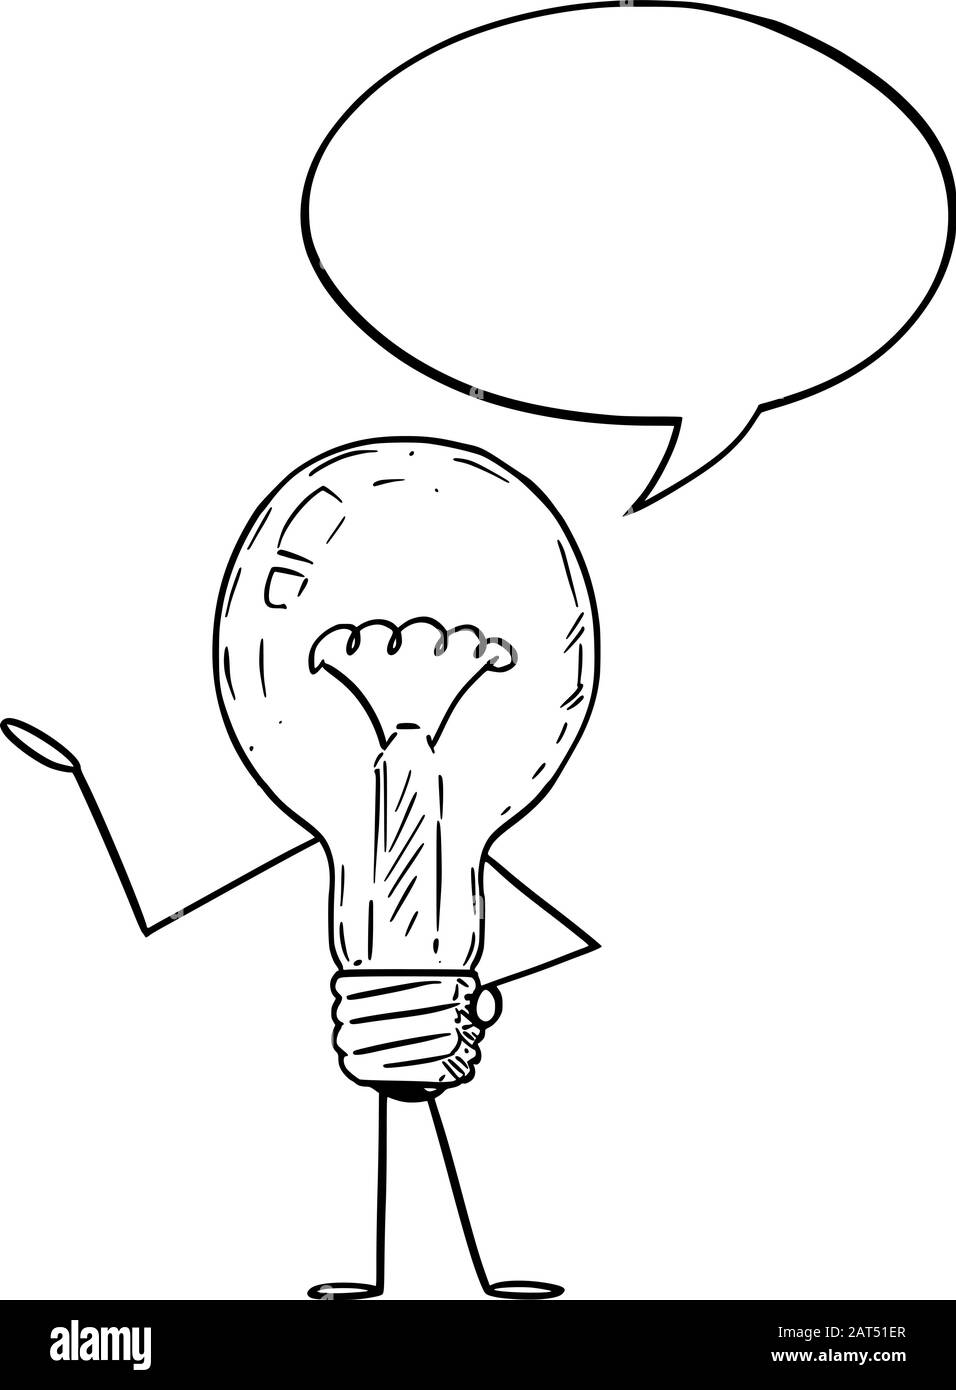 Vektorgrafiken von Cartoon-Glühbirnen mit Sprechblase. Innovation oder Ideenwerbung oder Marketingdesign. Stock Vektor